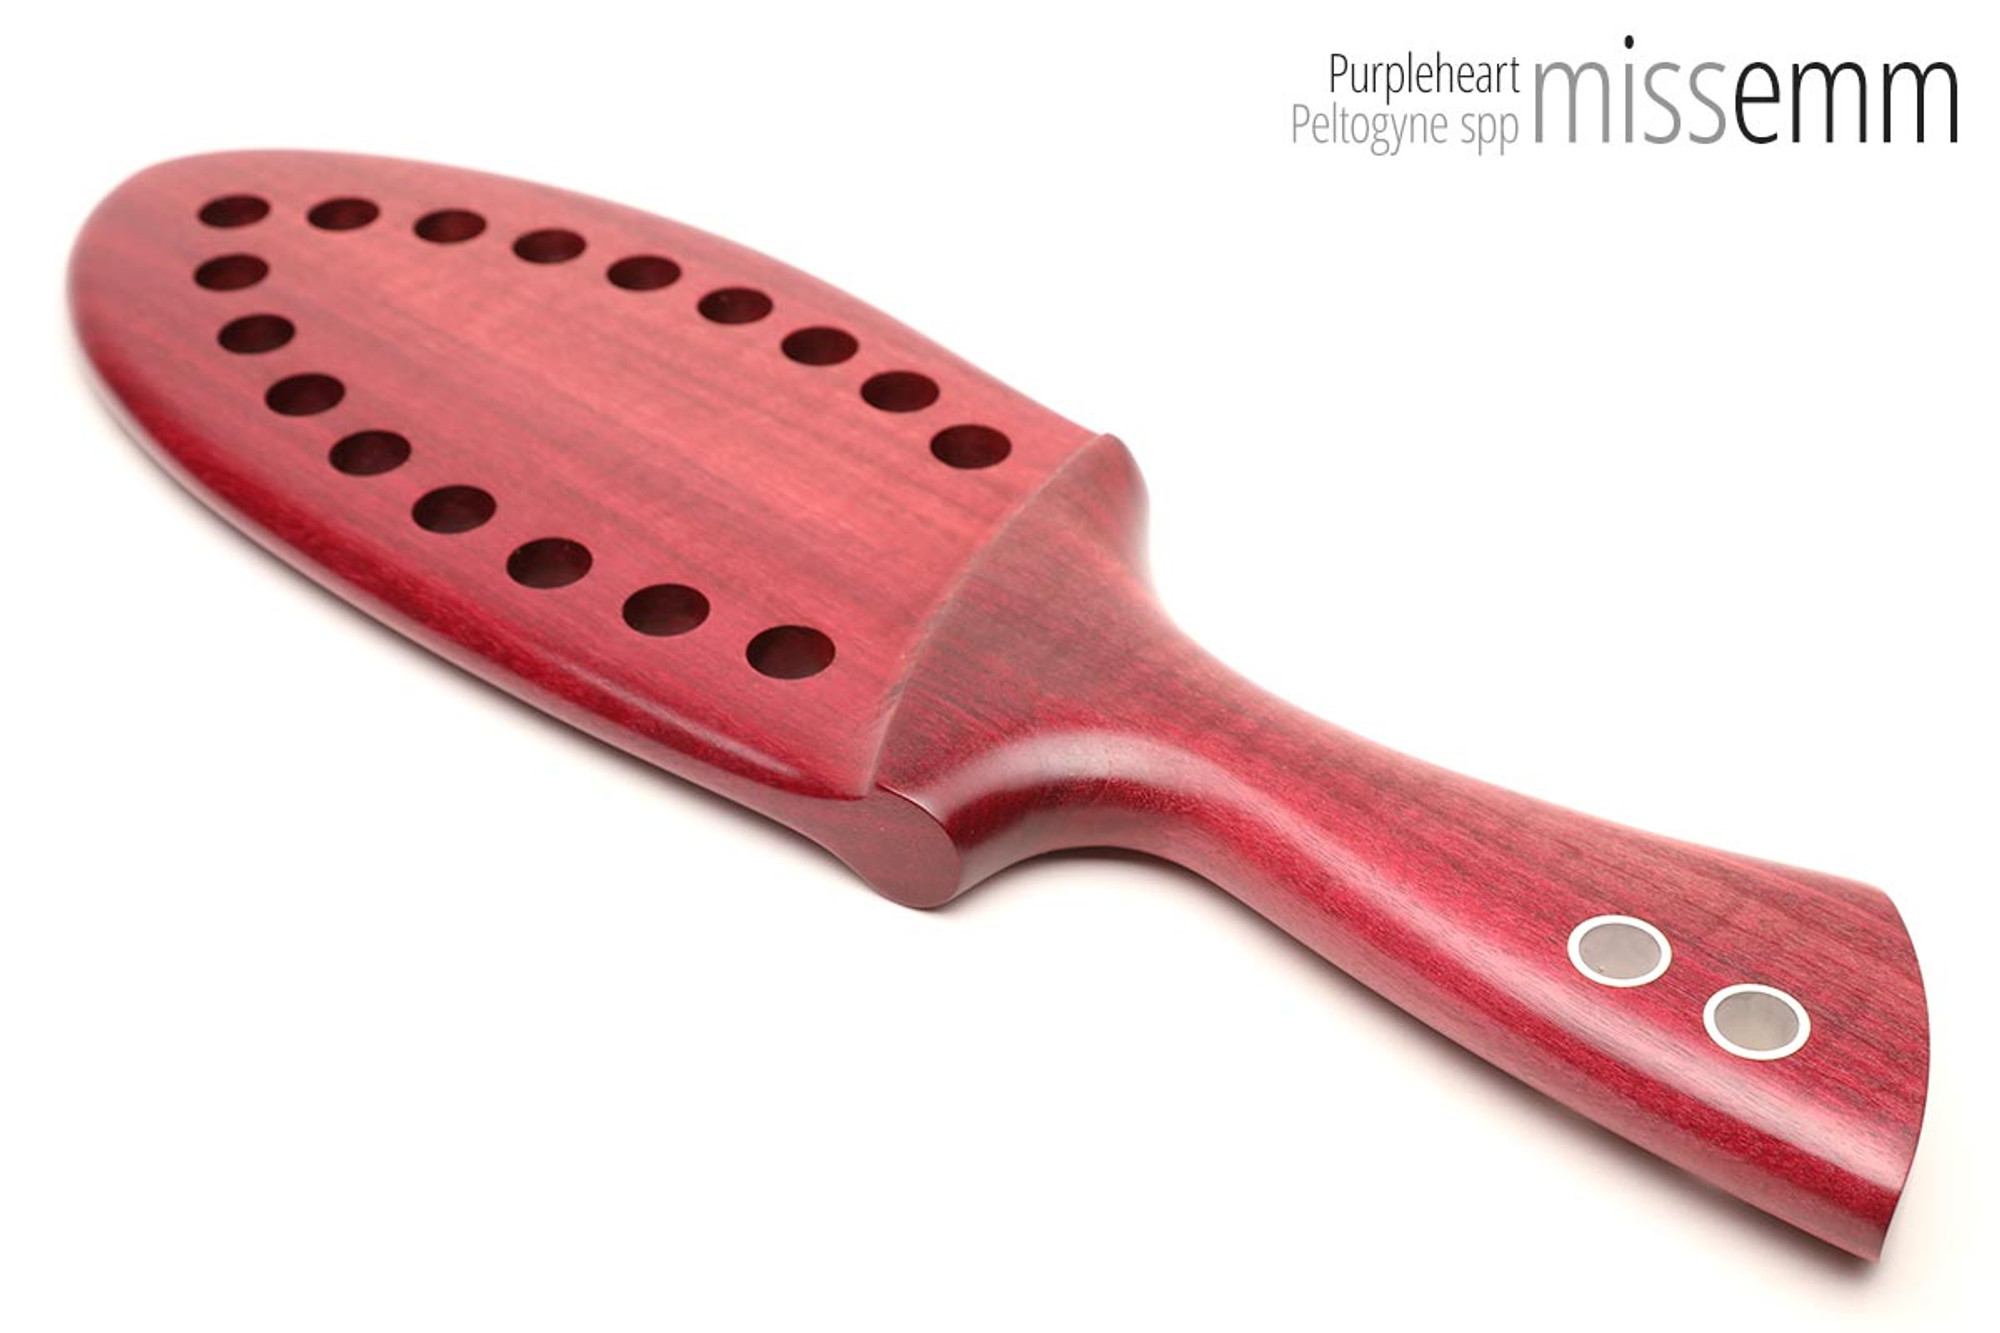 Unique fetish toys, BDSM spanking paddle